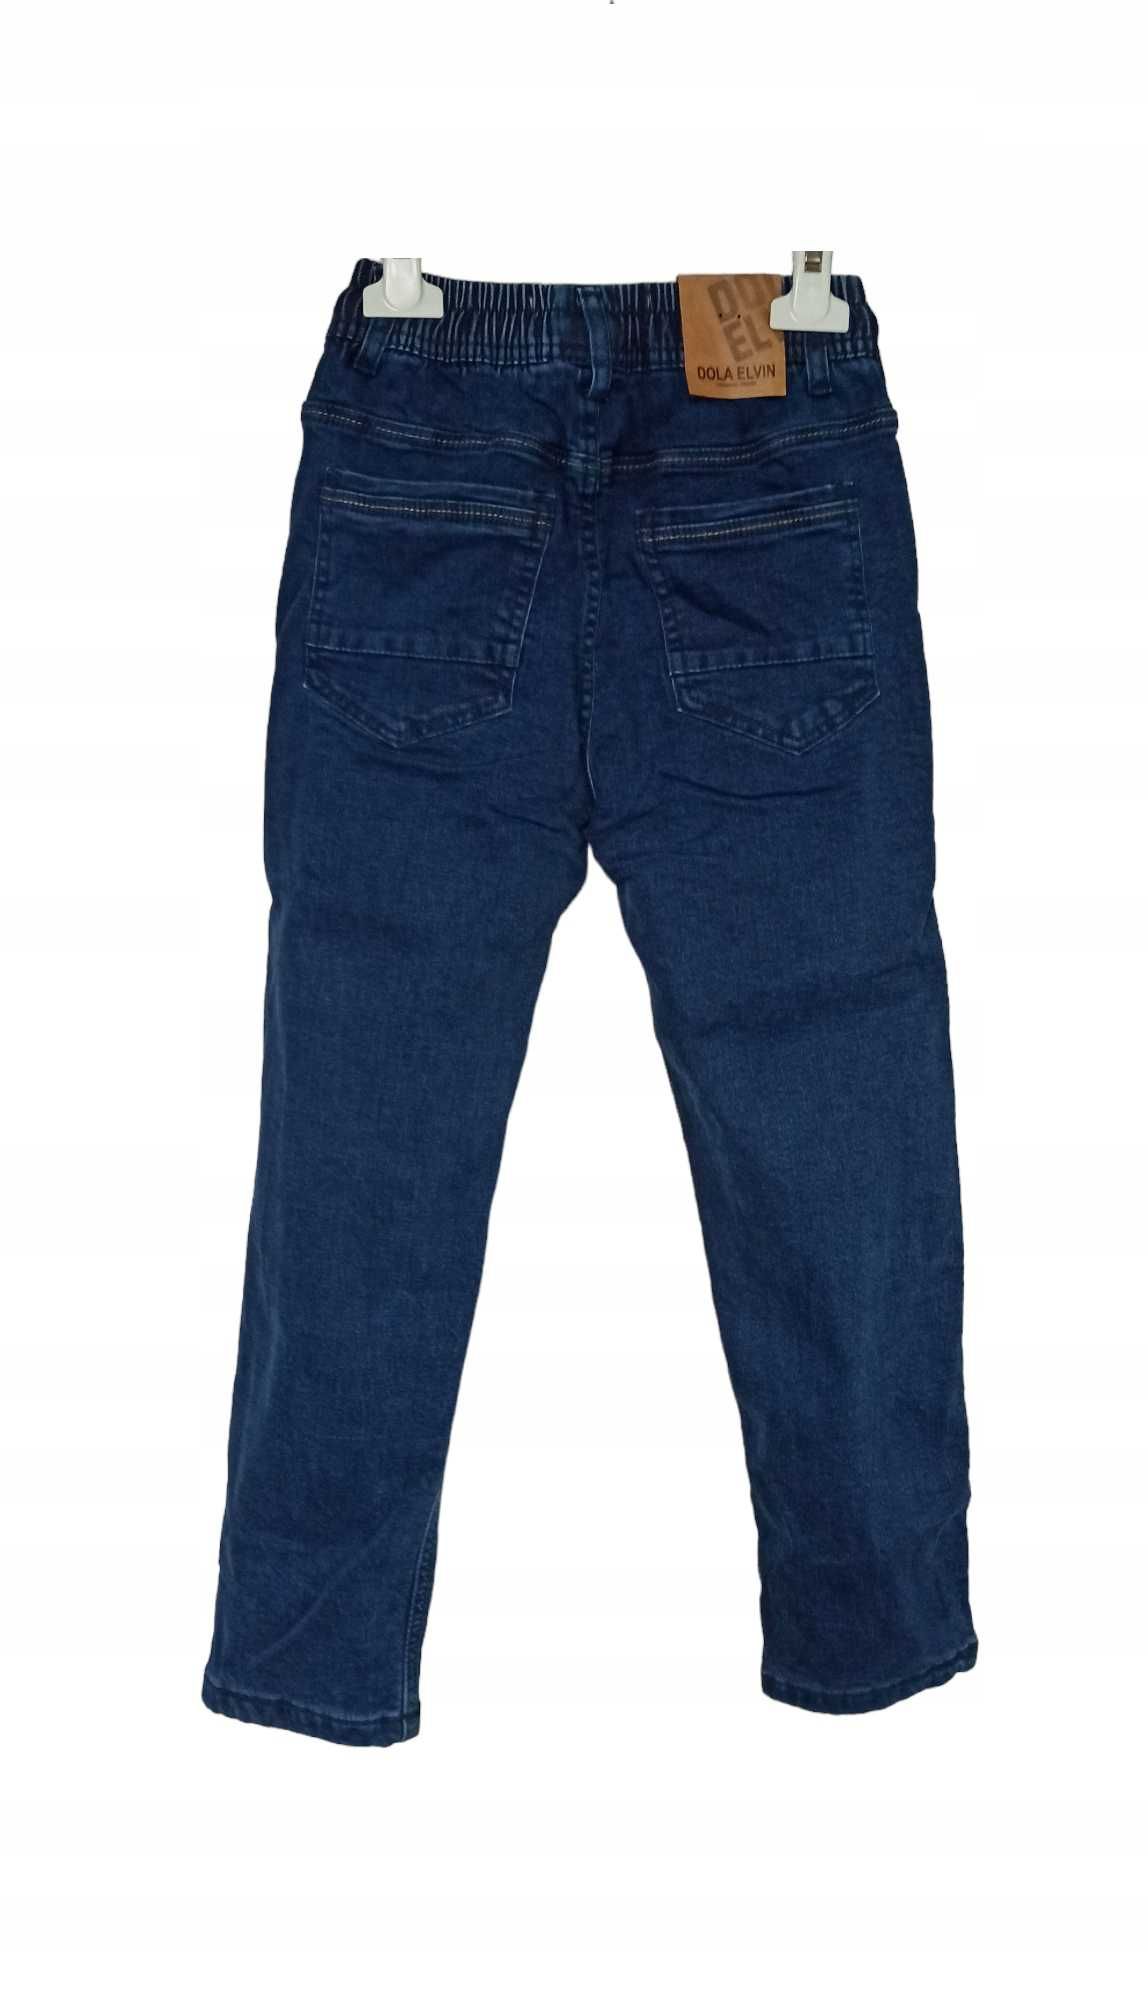 Spodnie Jeans miękkie elastyczne GUMA ocieplane polarem nowy 158-164